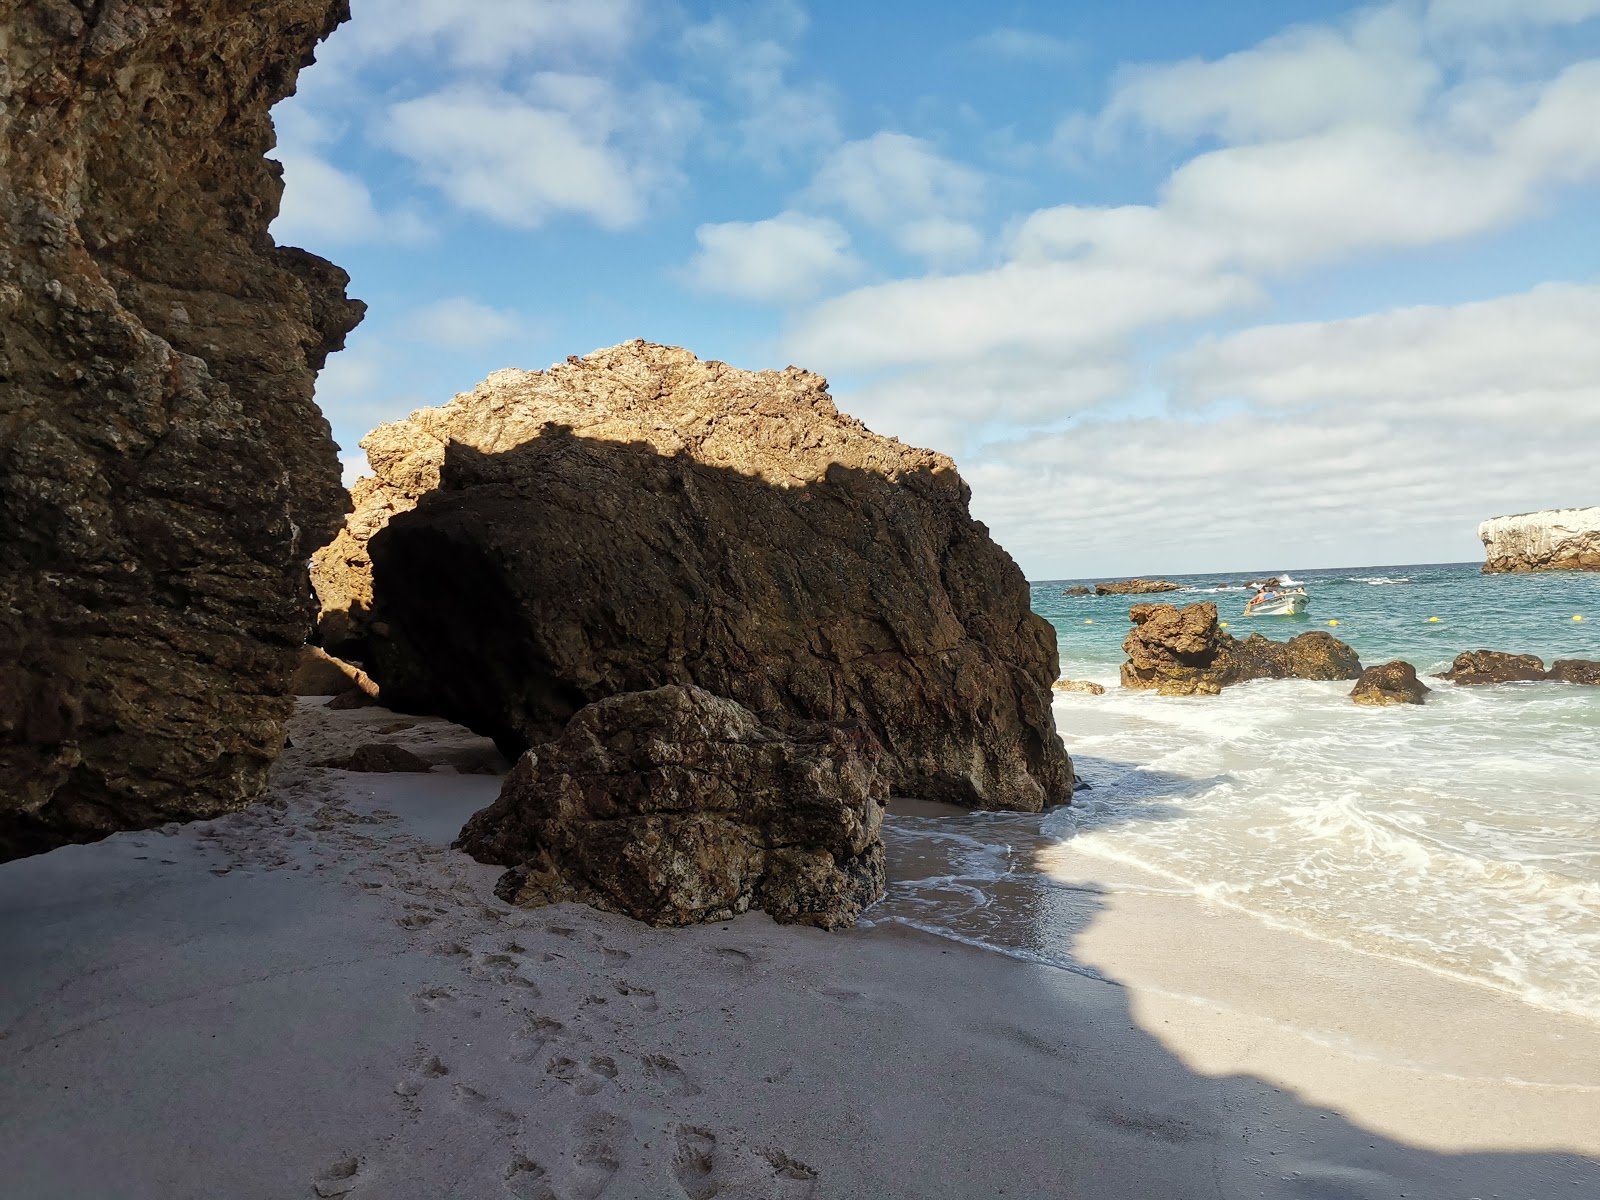 Valokuva Playa la nopalera beachista. sijaitsee luonnonalueella